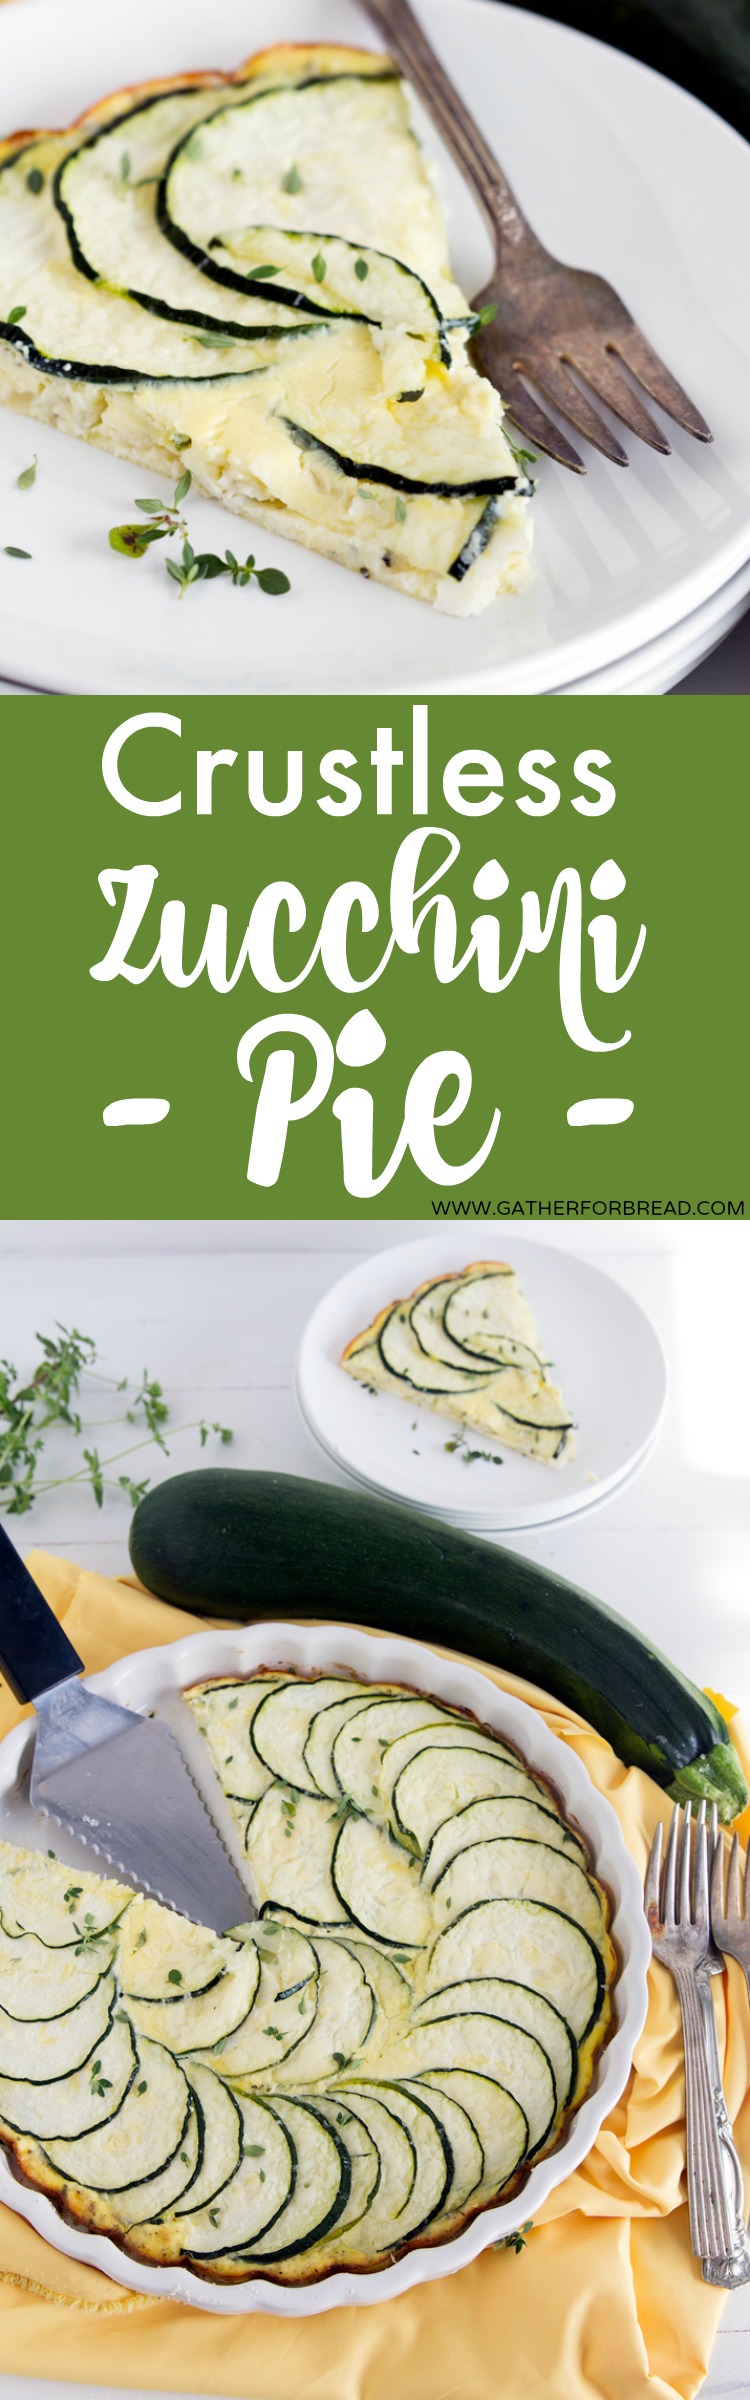 Crustless Zucchini Pie